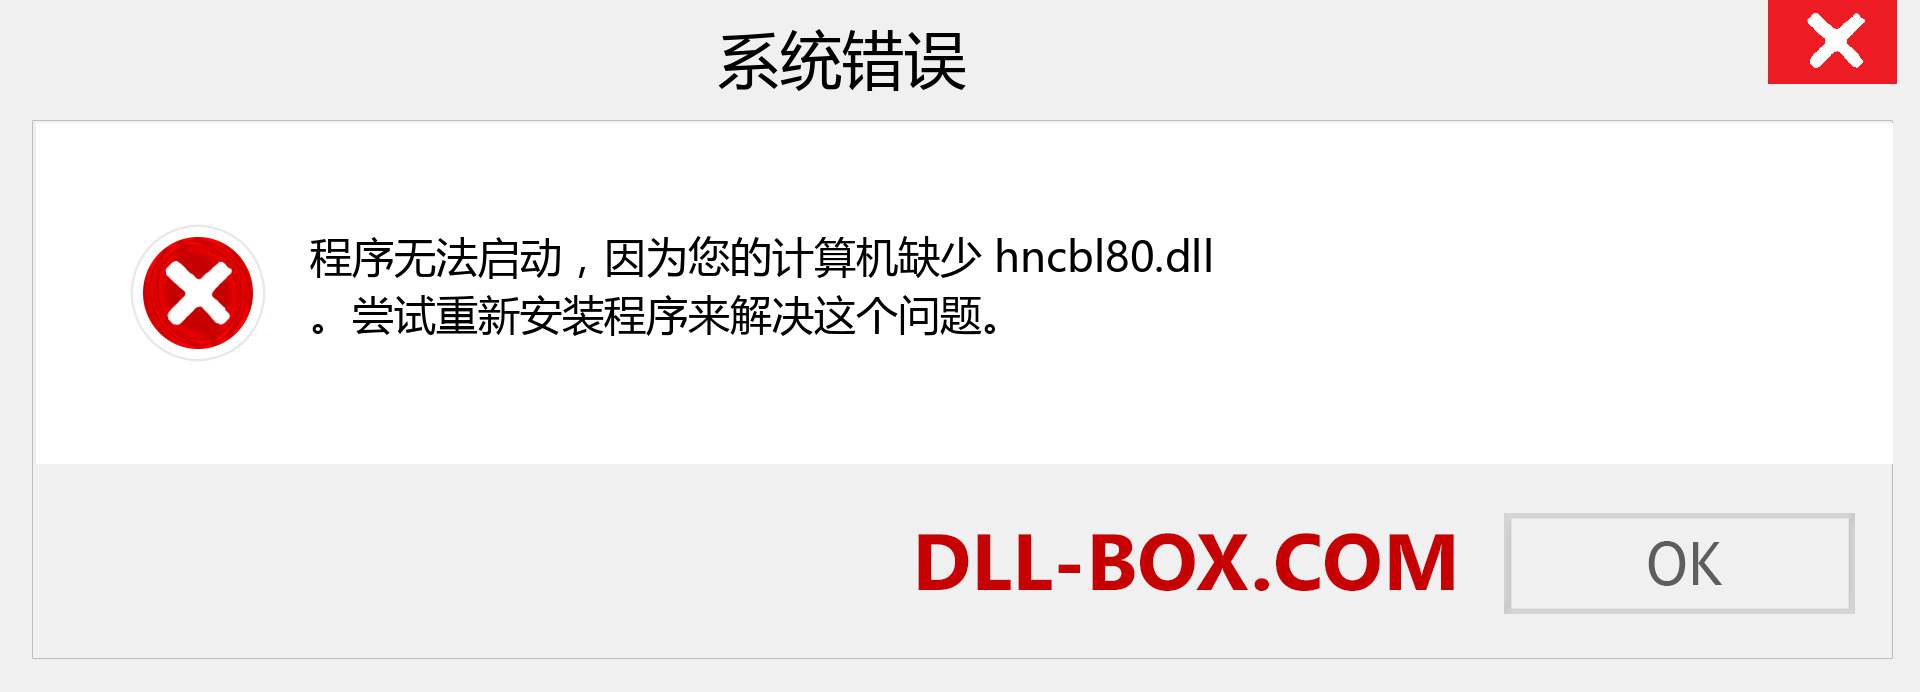 hncbl80.dll 文件丢失？。 适用于 Windows 7、8、10 的下载 - 修复 Windows、照片、图像上的 hncbl80 dll 丢失错误